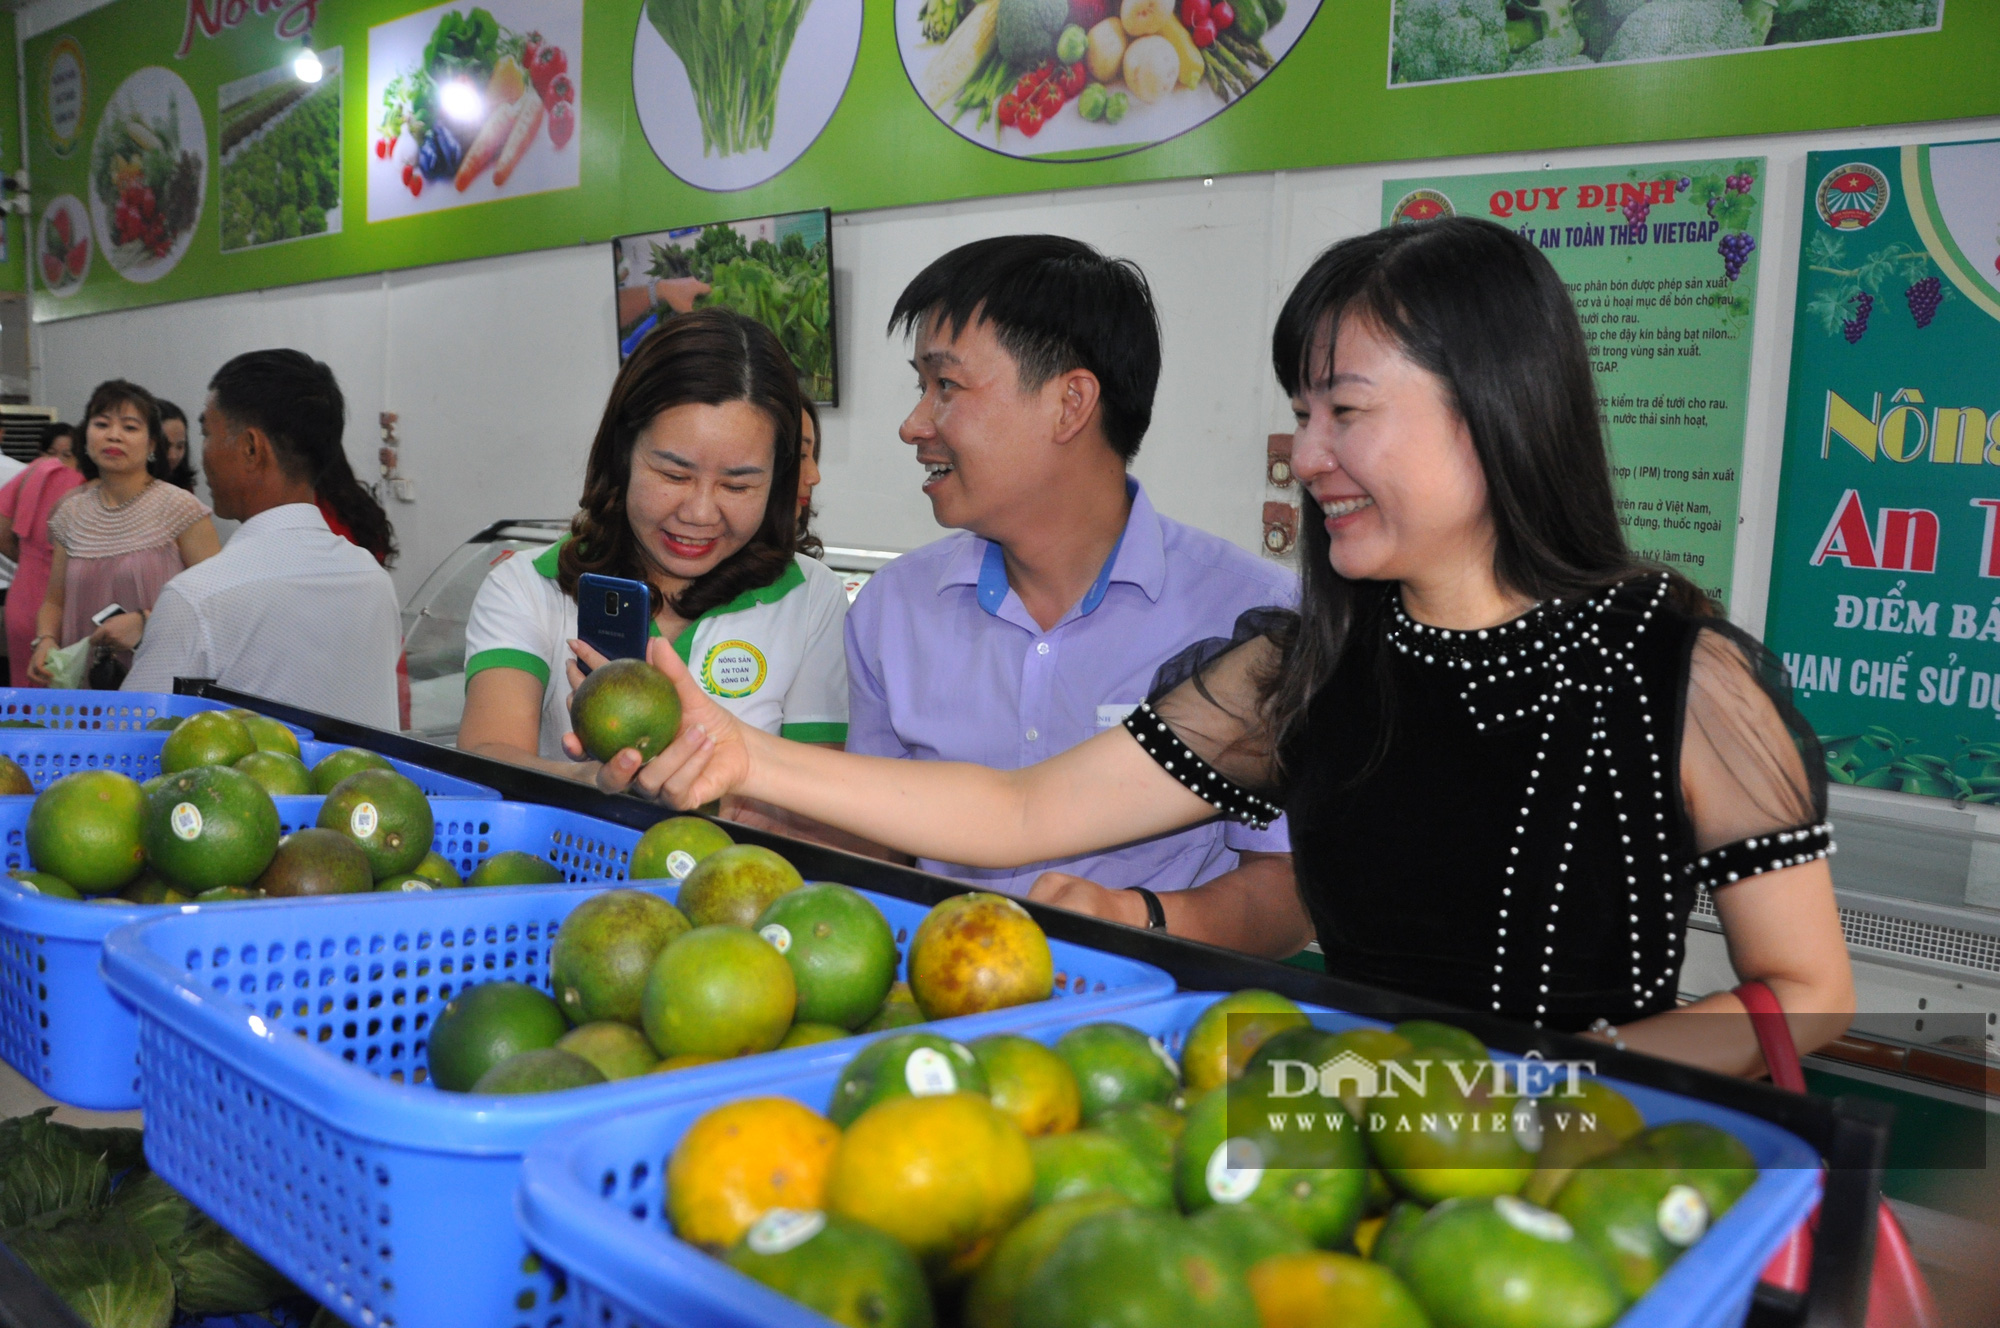 CLIP: Chủ tịch Hội Nông dân Việt Nam ấn tượng với đặc sản tại cửa hàng nông sản đặc sản đầu tiên ở Hòa Bình - Ảnh 4.